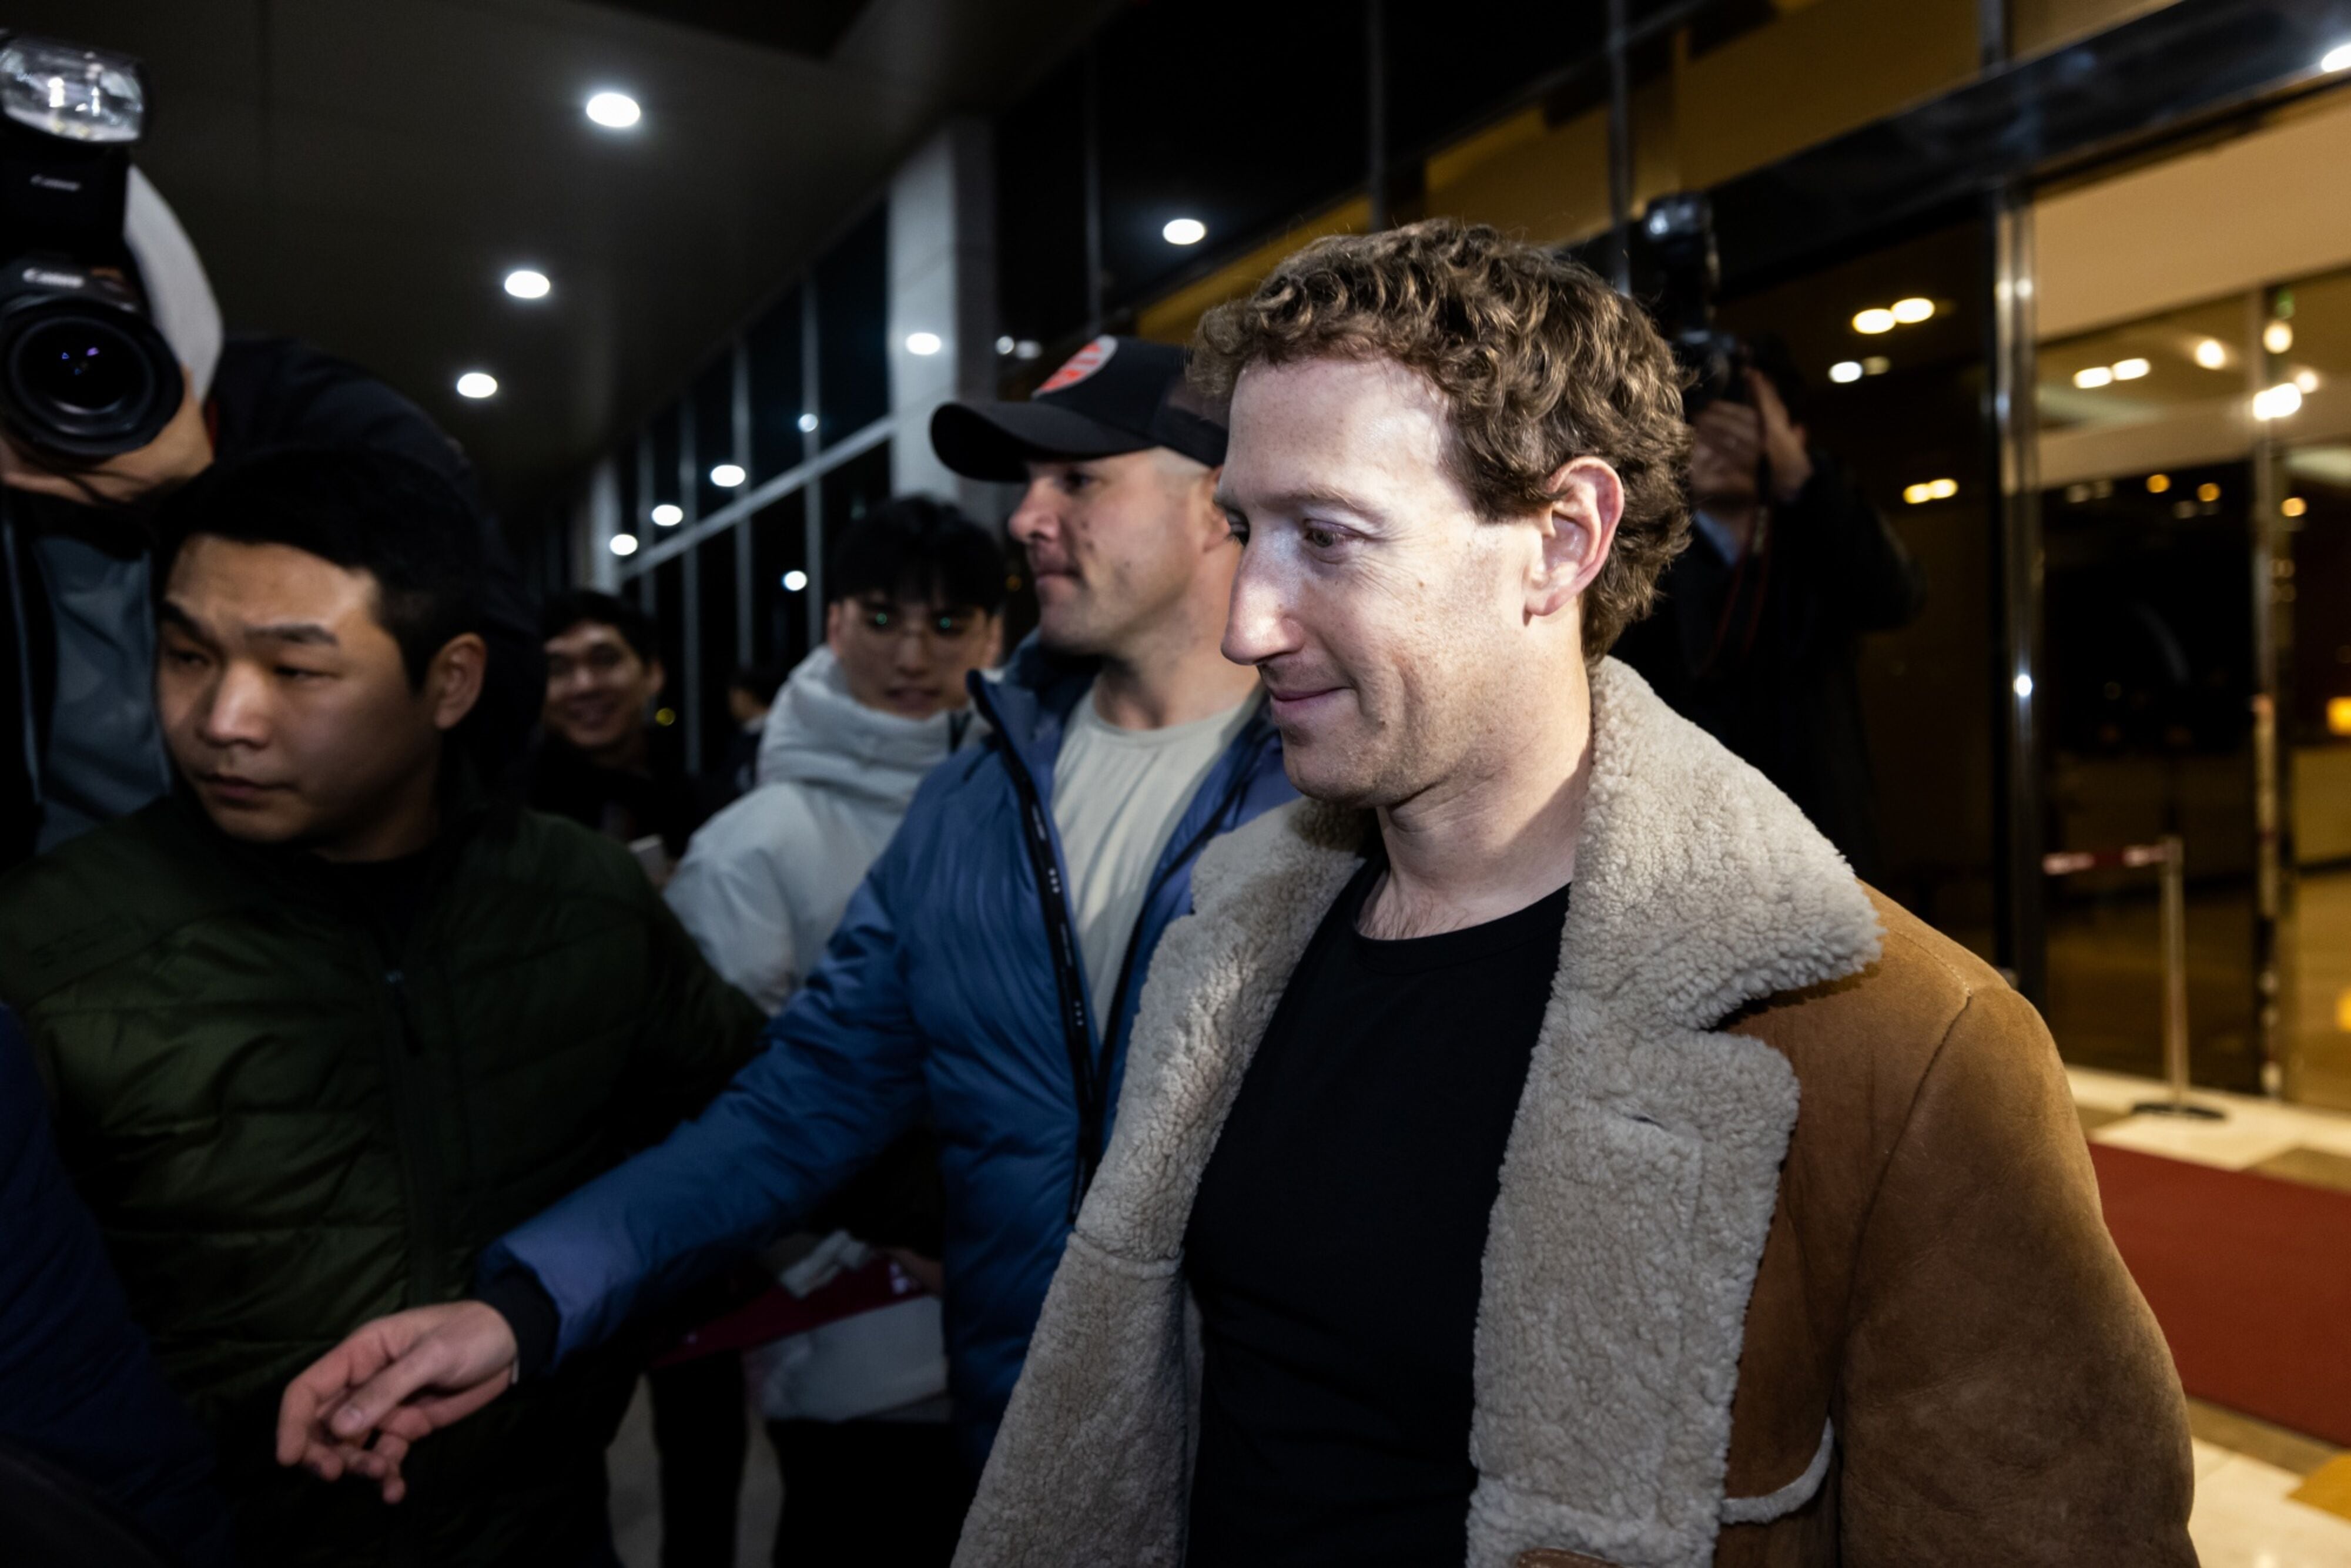 Meta vs. X: Mark Zuckerberg arrebata a Elon Musk el puesto de 3er hombre más rico del mundo